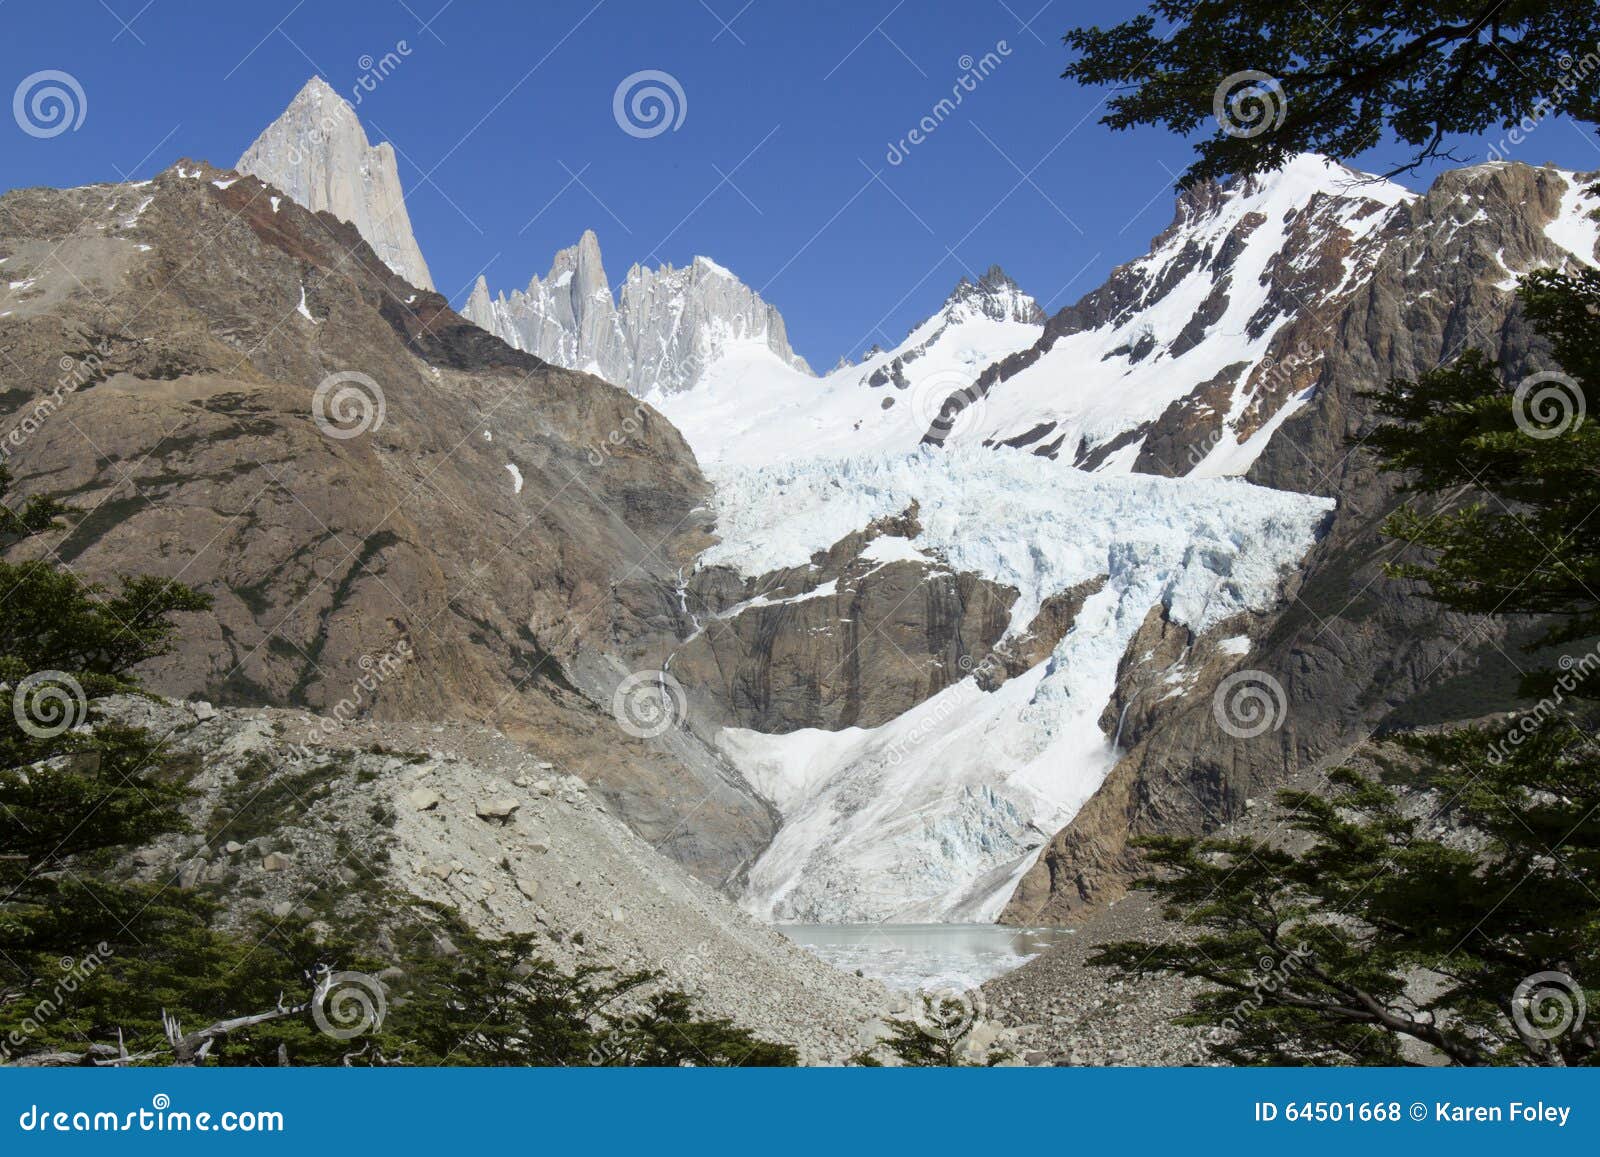 glacier piedras blancas